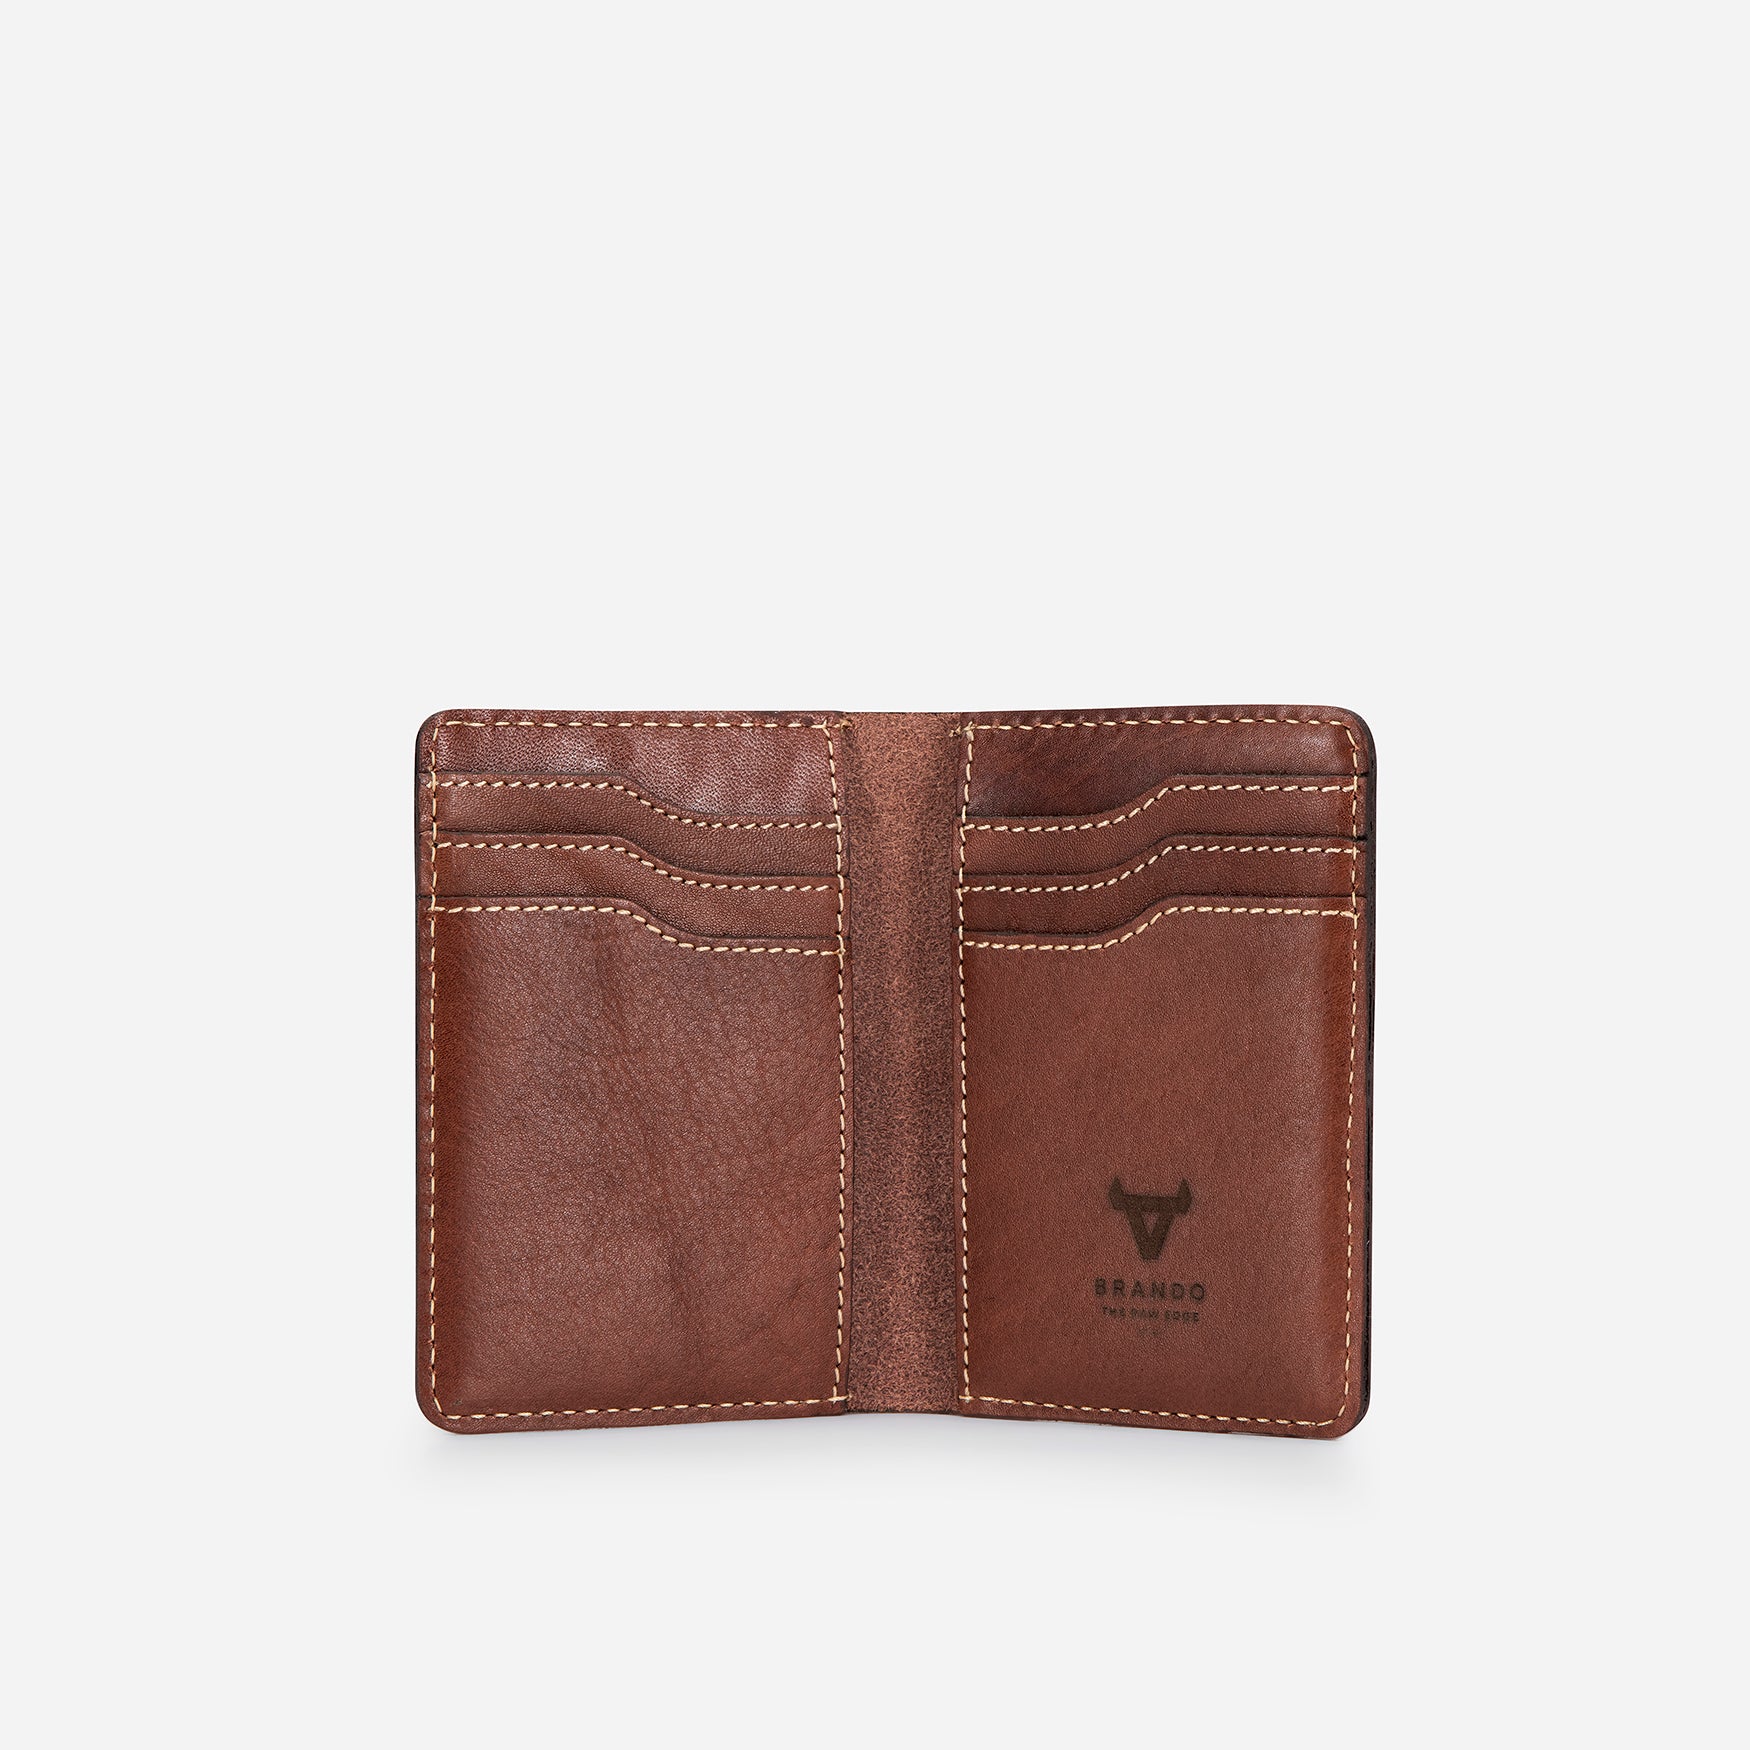 Wayne Leather Card Wallet, Brown